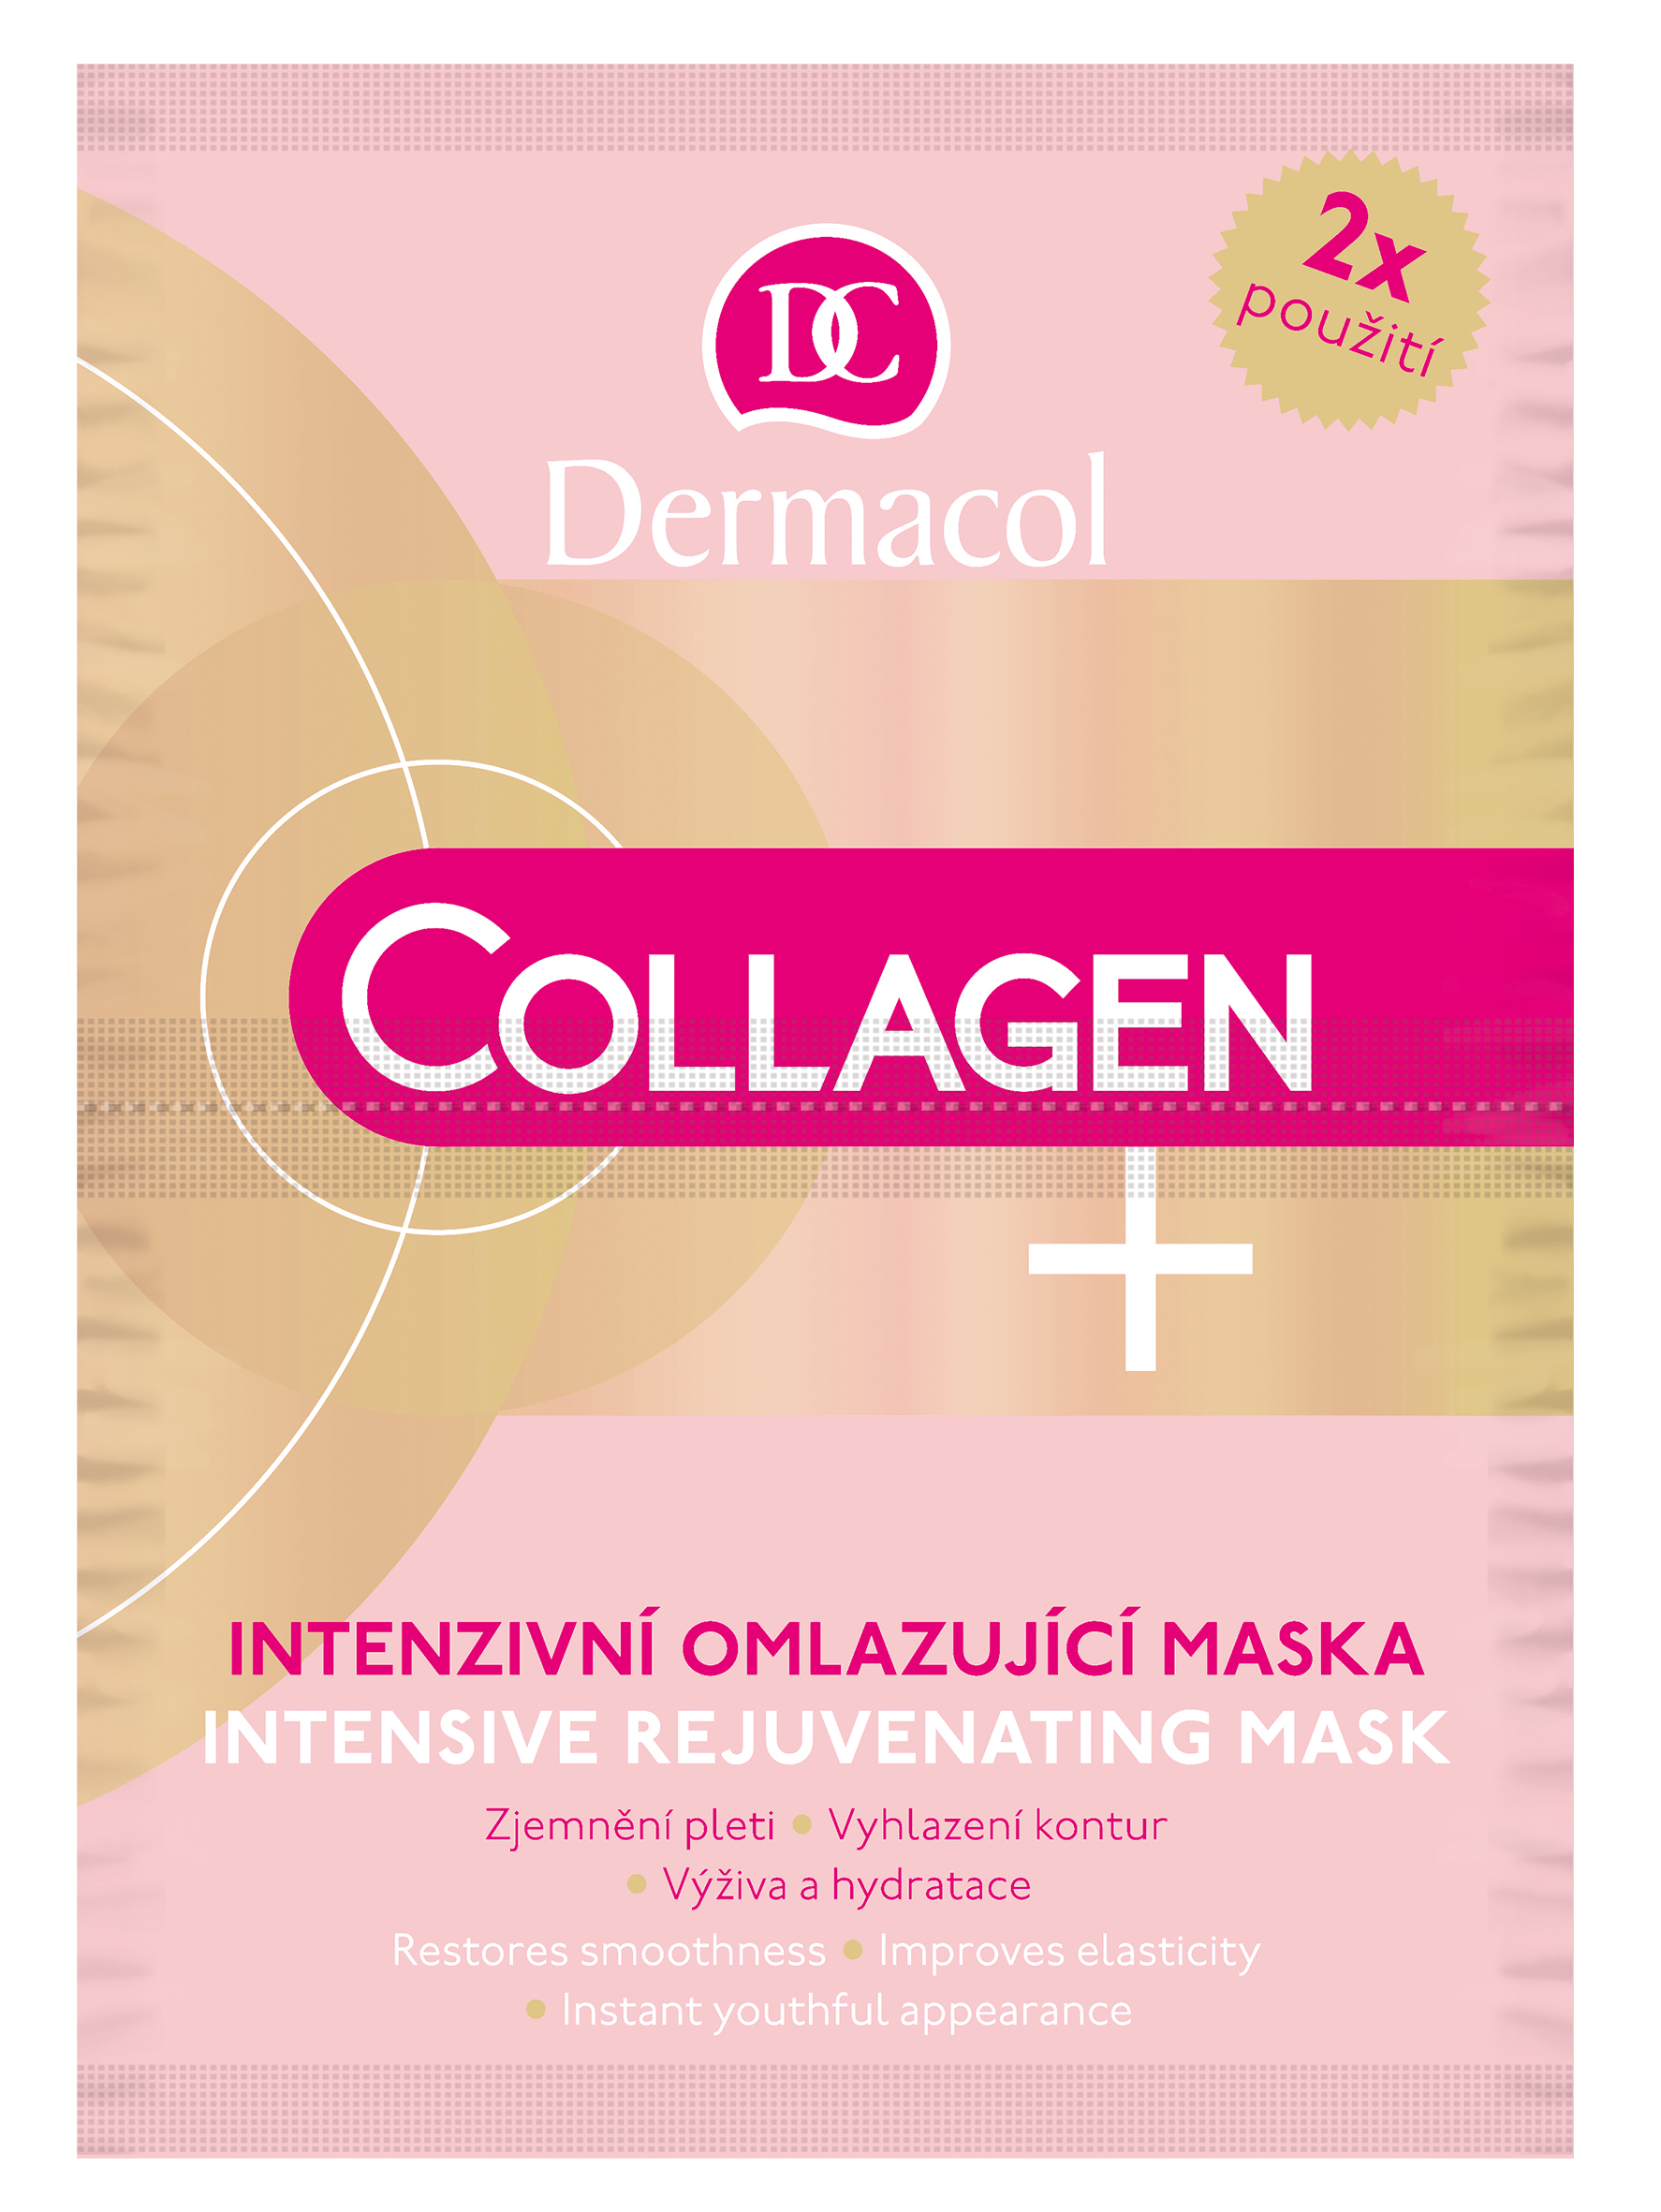 Collagen plus - интенсивная омолаживающая коллагеновая маска